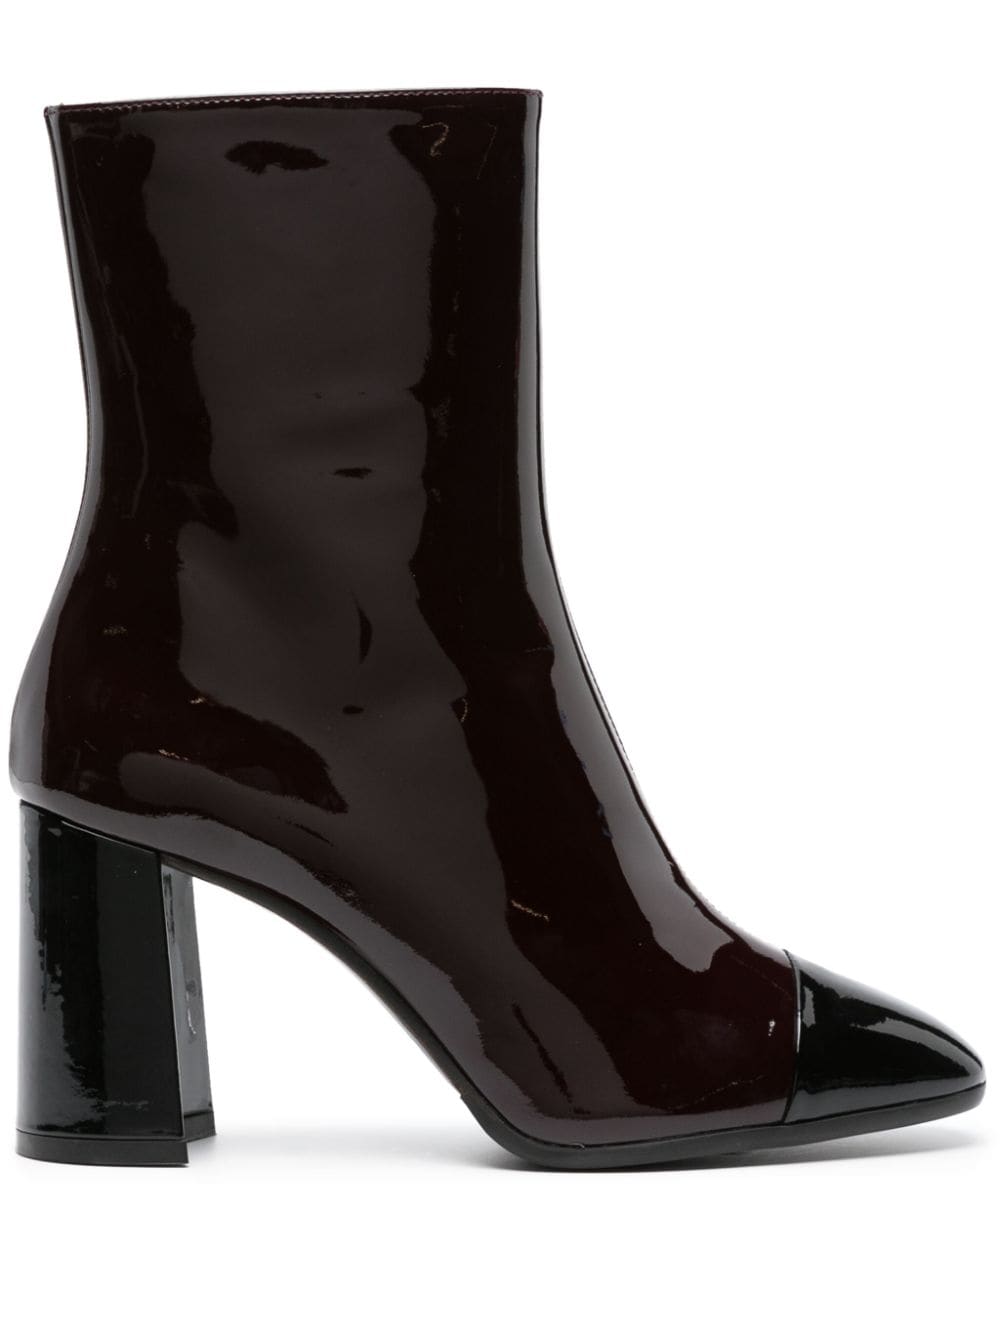 Carel Paris Donna 85mm leather ankle boots - Brown von Carel Paris